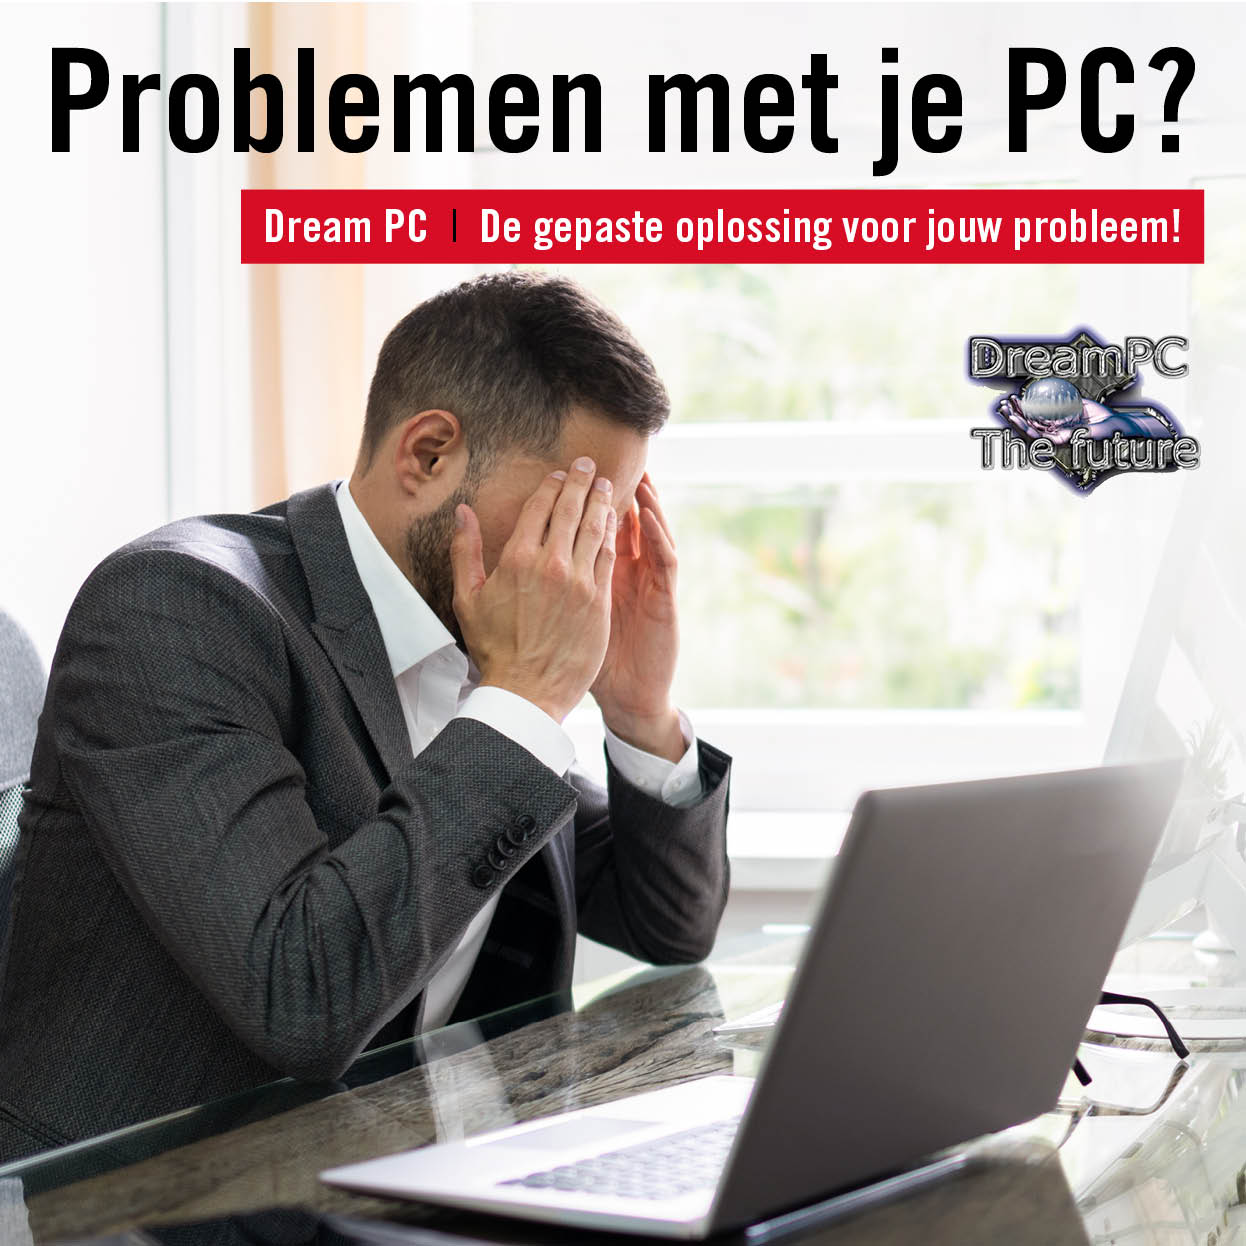 08285 - Dream PC